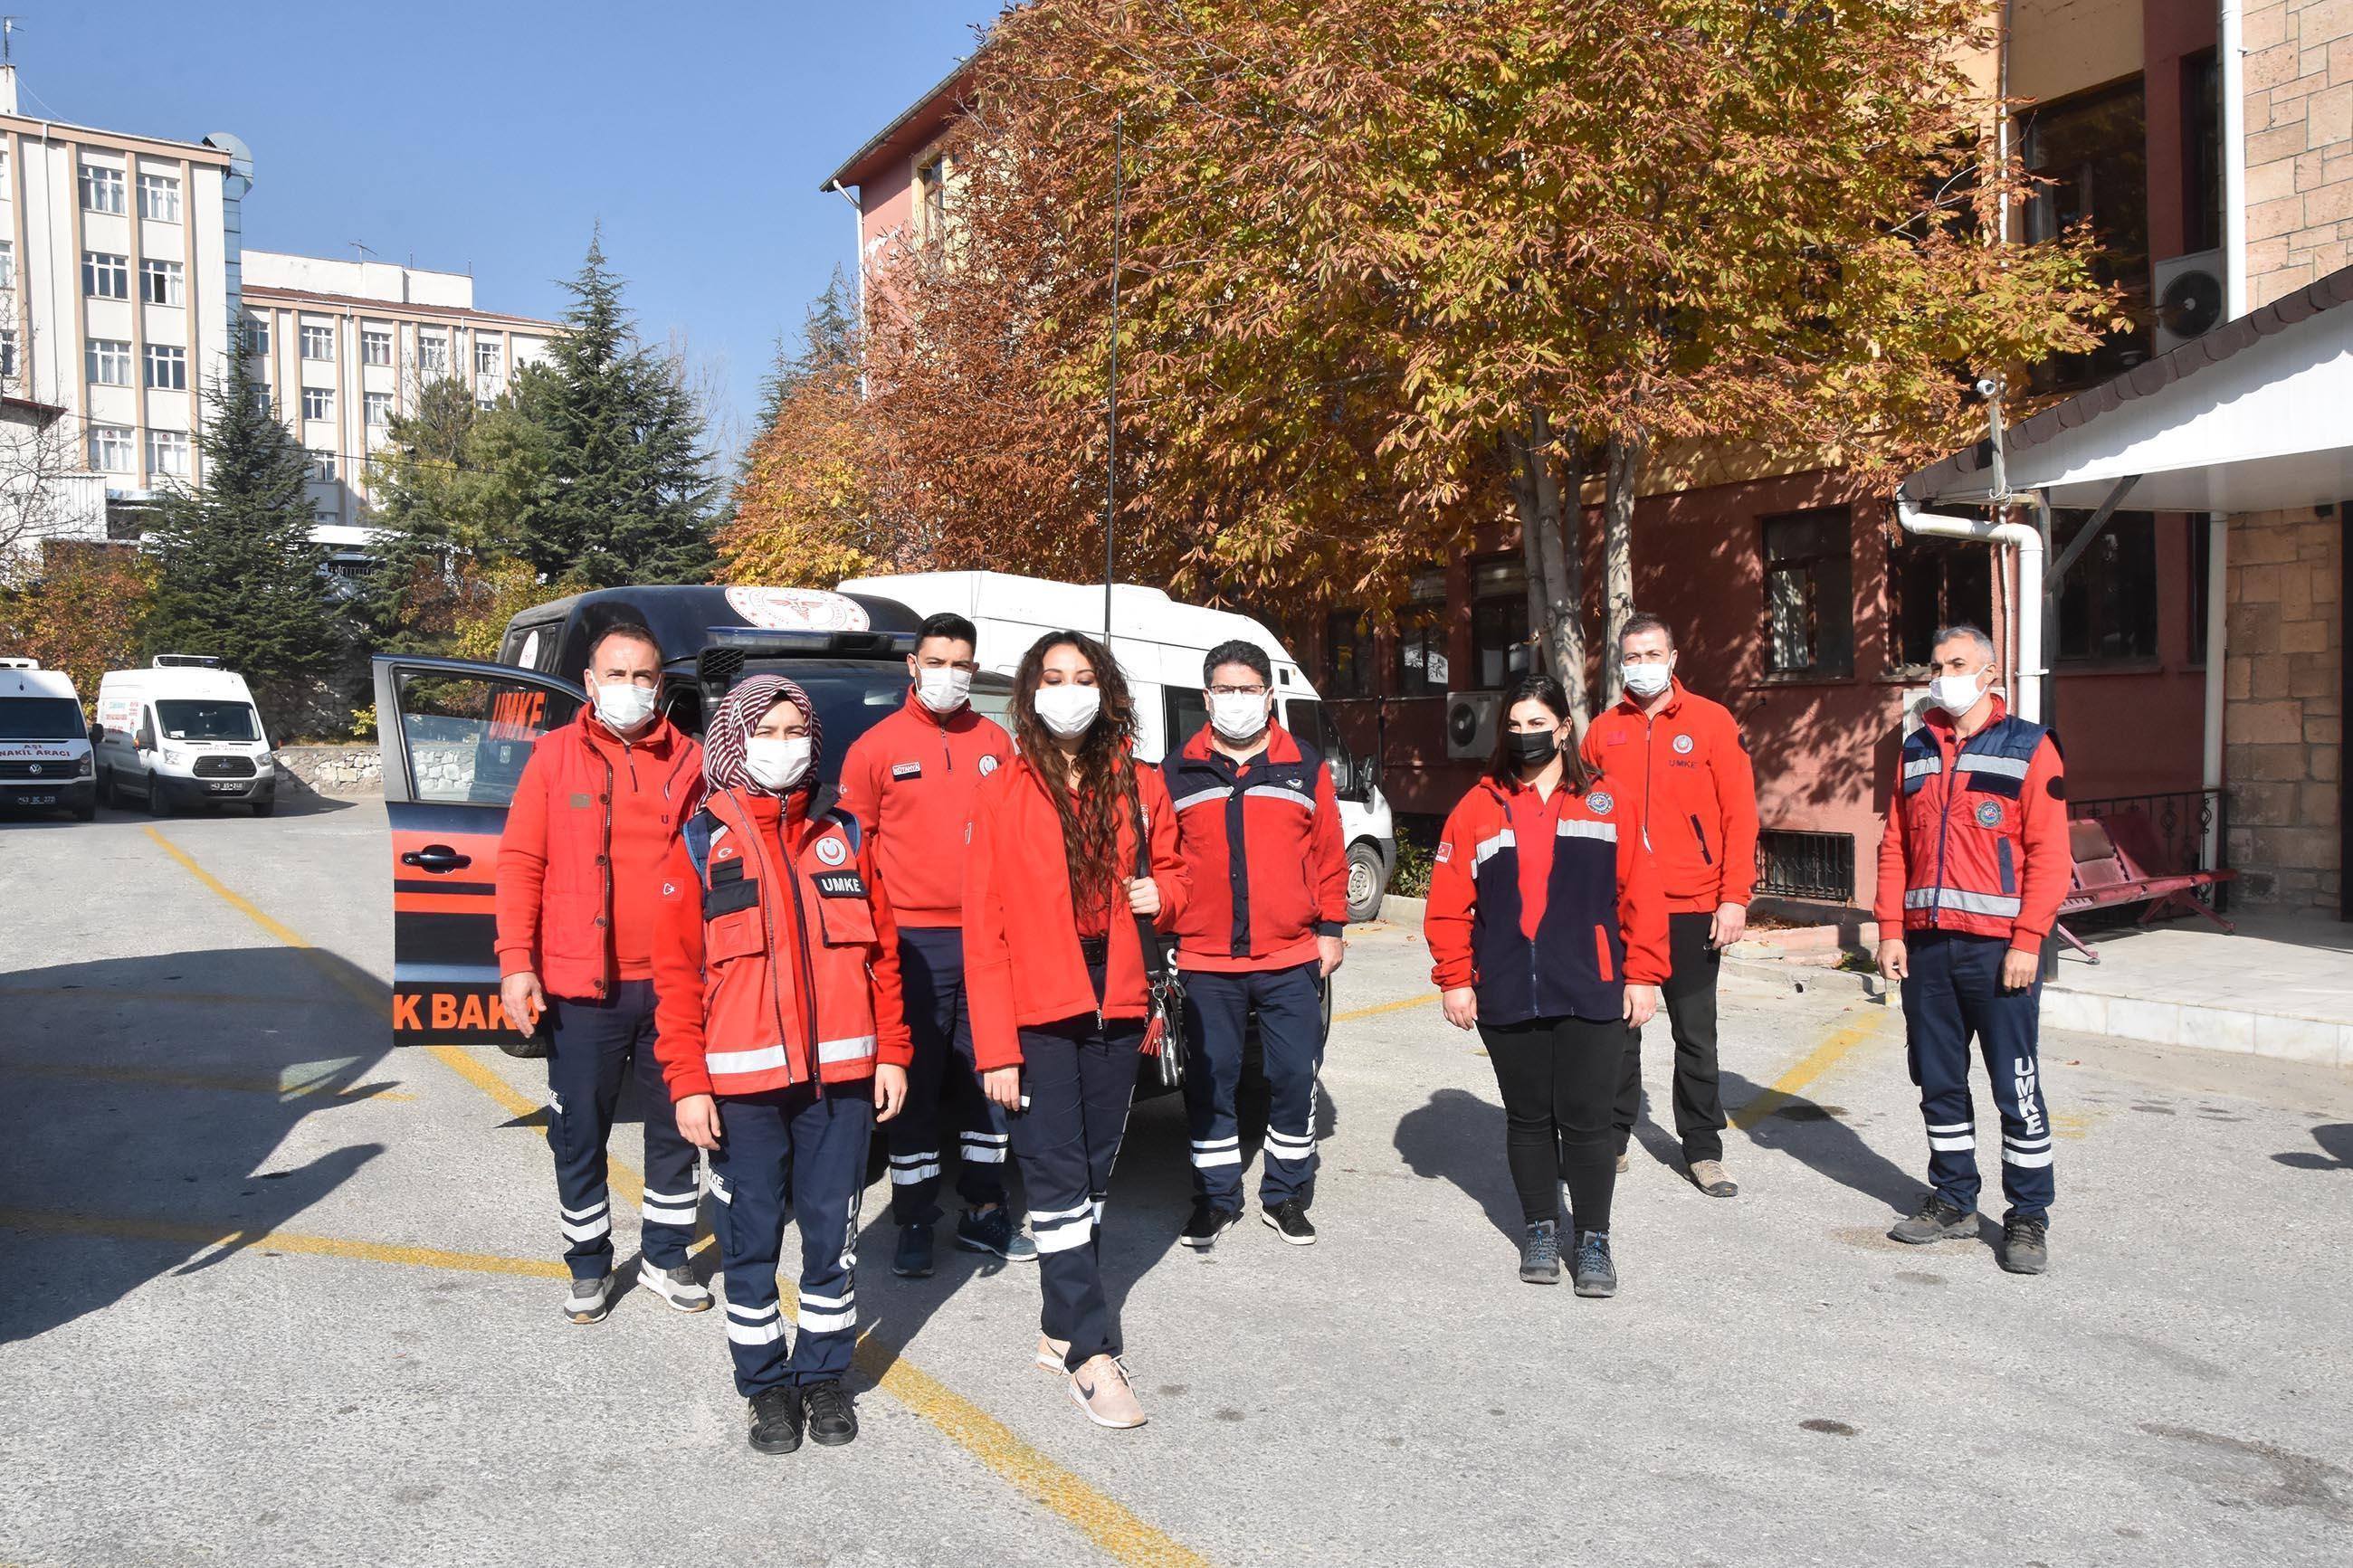 İzmirde 16 saat sonra enkazdan kurtuluşa imza atan UMKE ekibi, yaşadıklarını anlattı